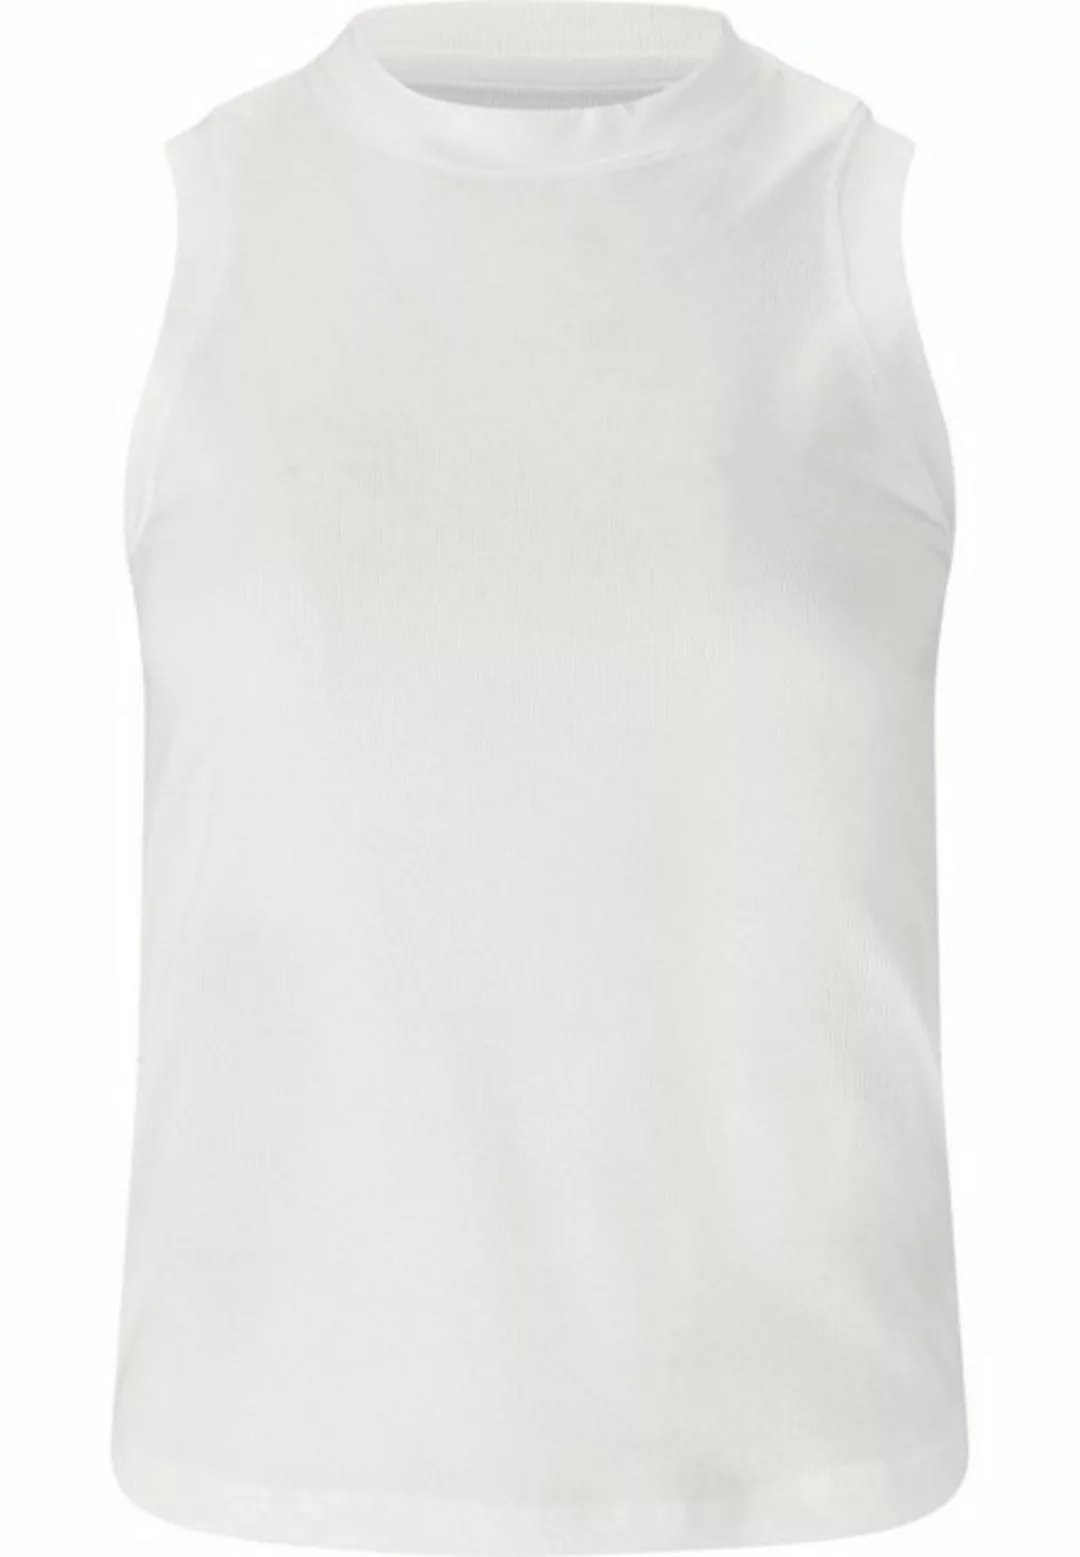 ATHLECIA T-Shirt Ariane W Damen Sport-Top weiß günstig online kaufen